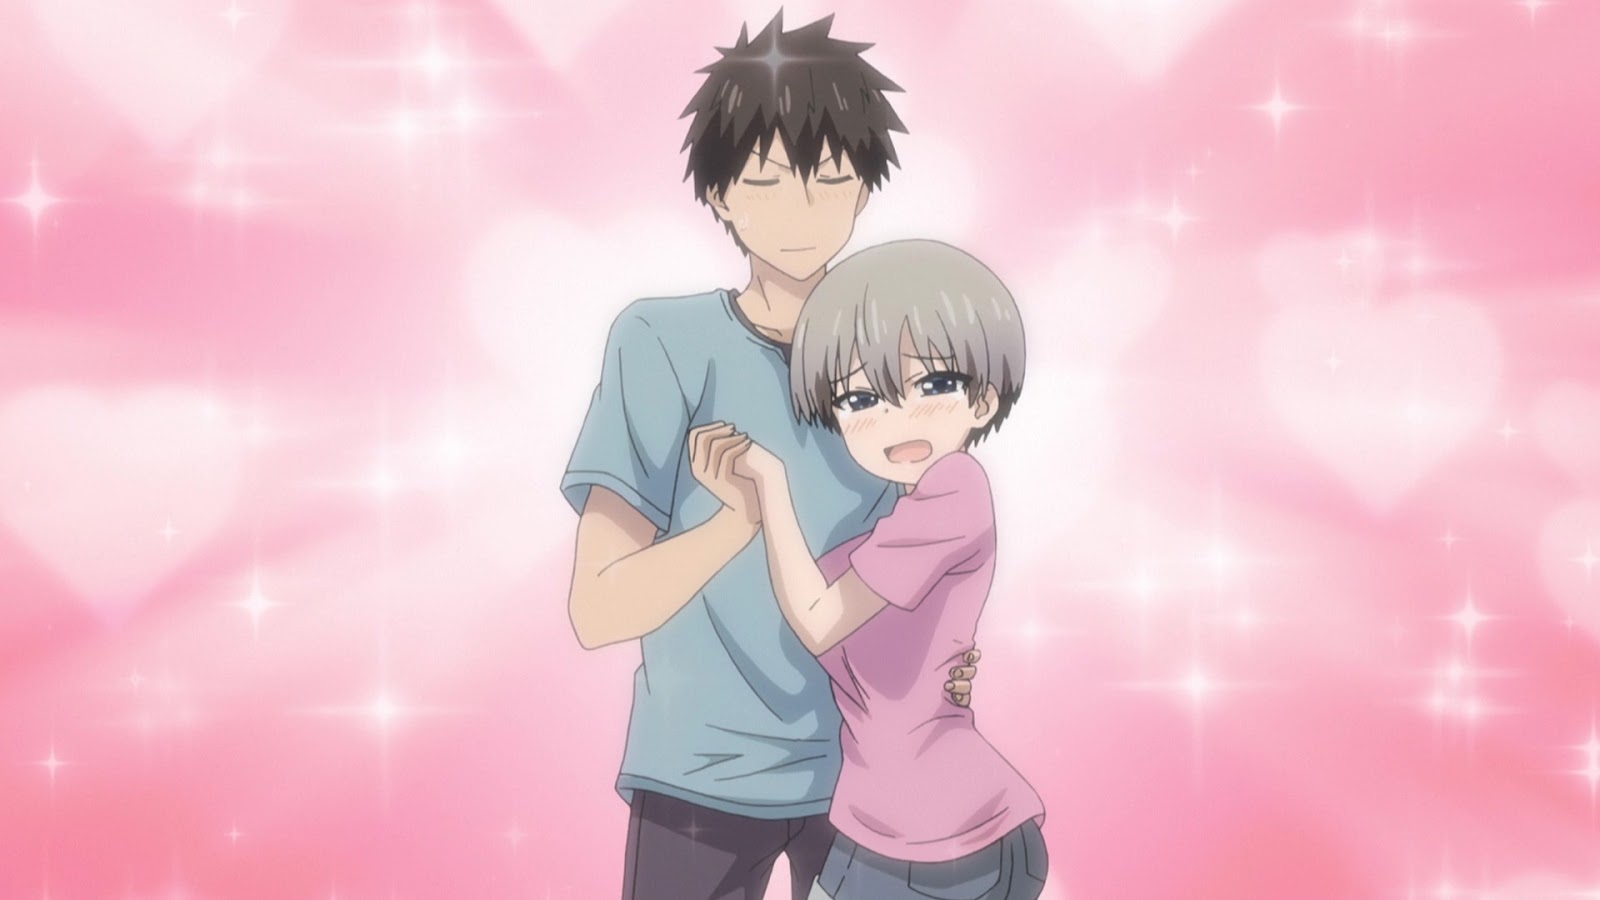 Crunchyroll.pt - Ah, sim, as quatro coisas mais importantes em um namorado  🏋️‍♂️ (✨ Anime: Uzaki-chan Wants to Hang Out!)